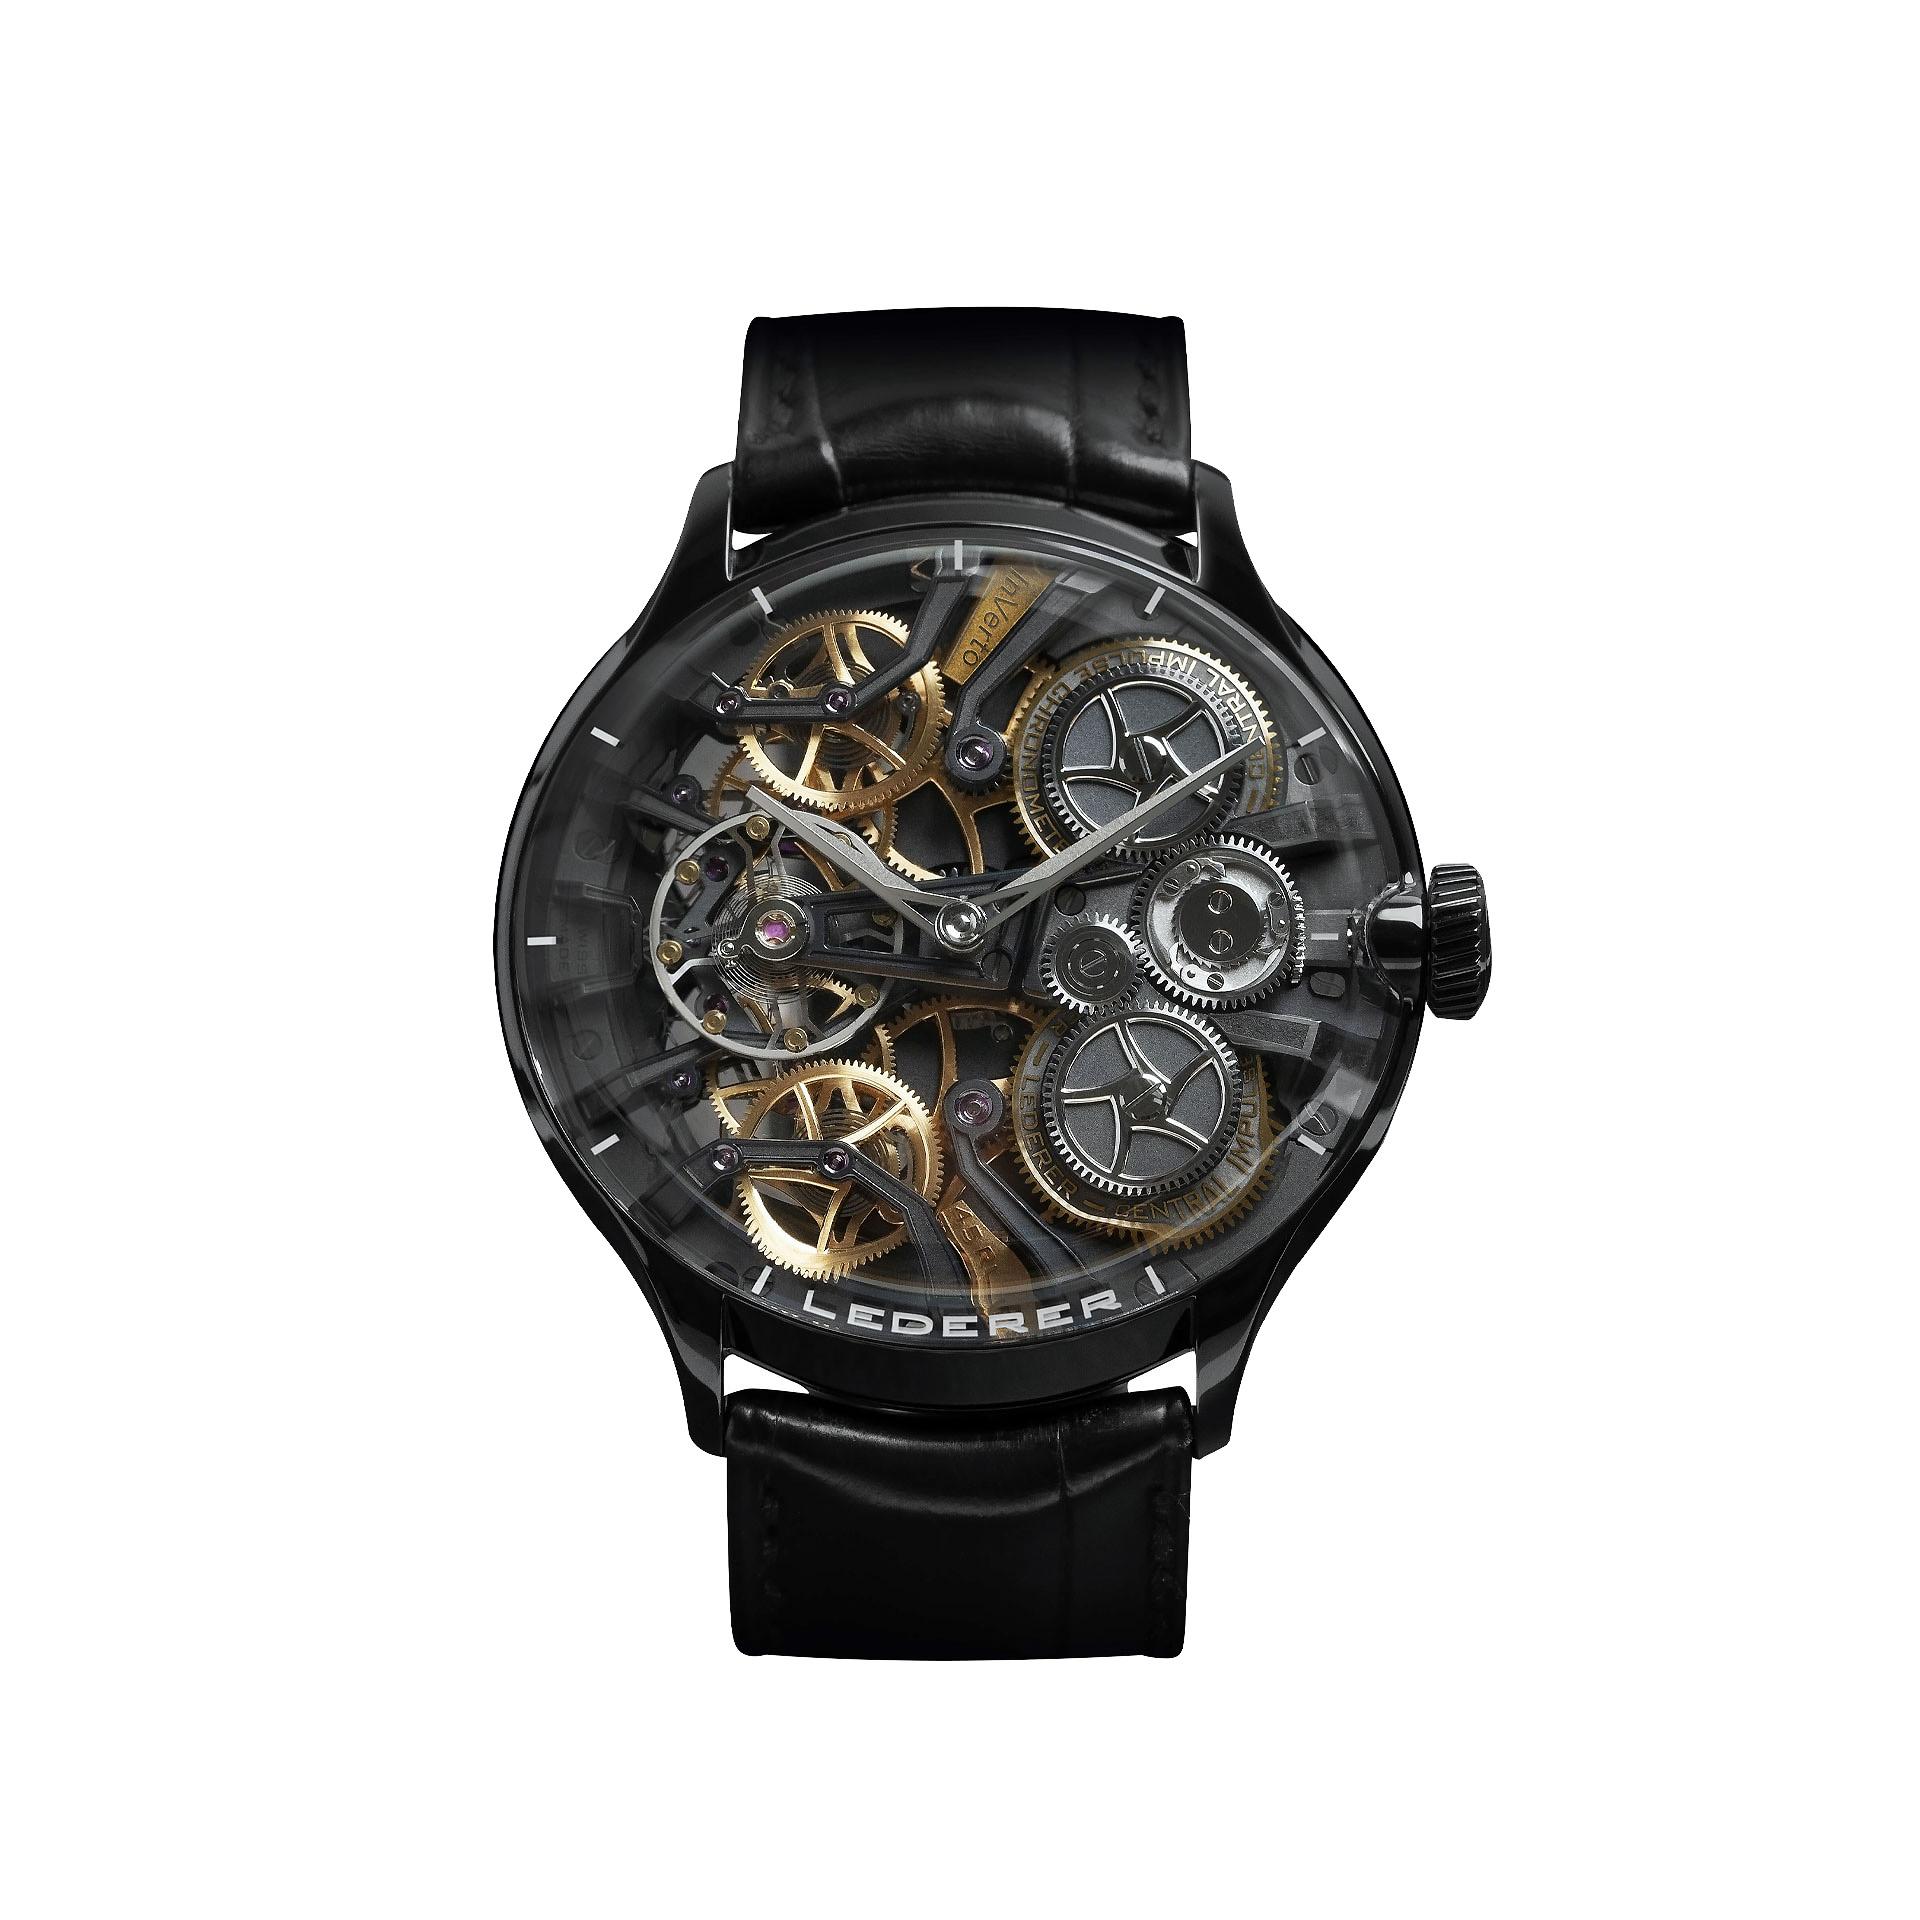 Buy Carlton London Analog Watch - Rose Gold online